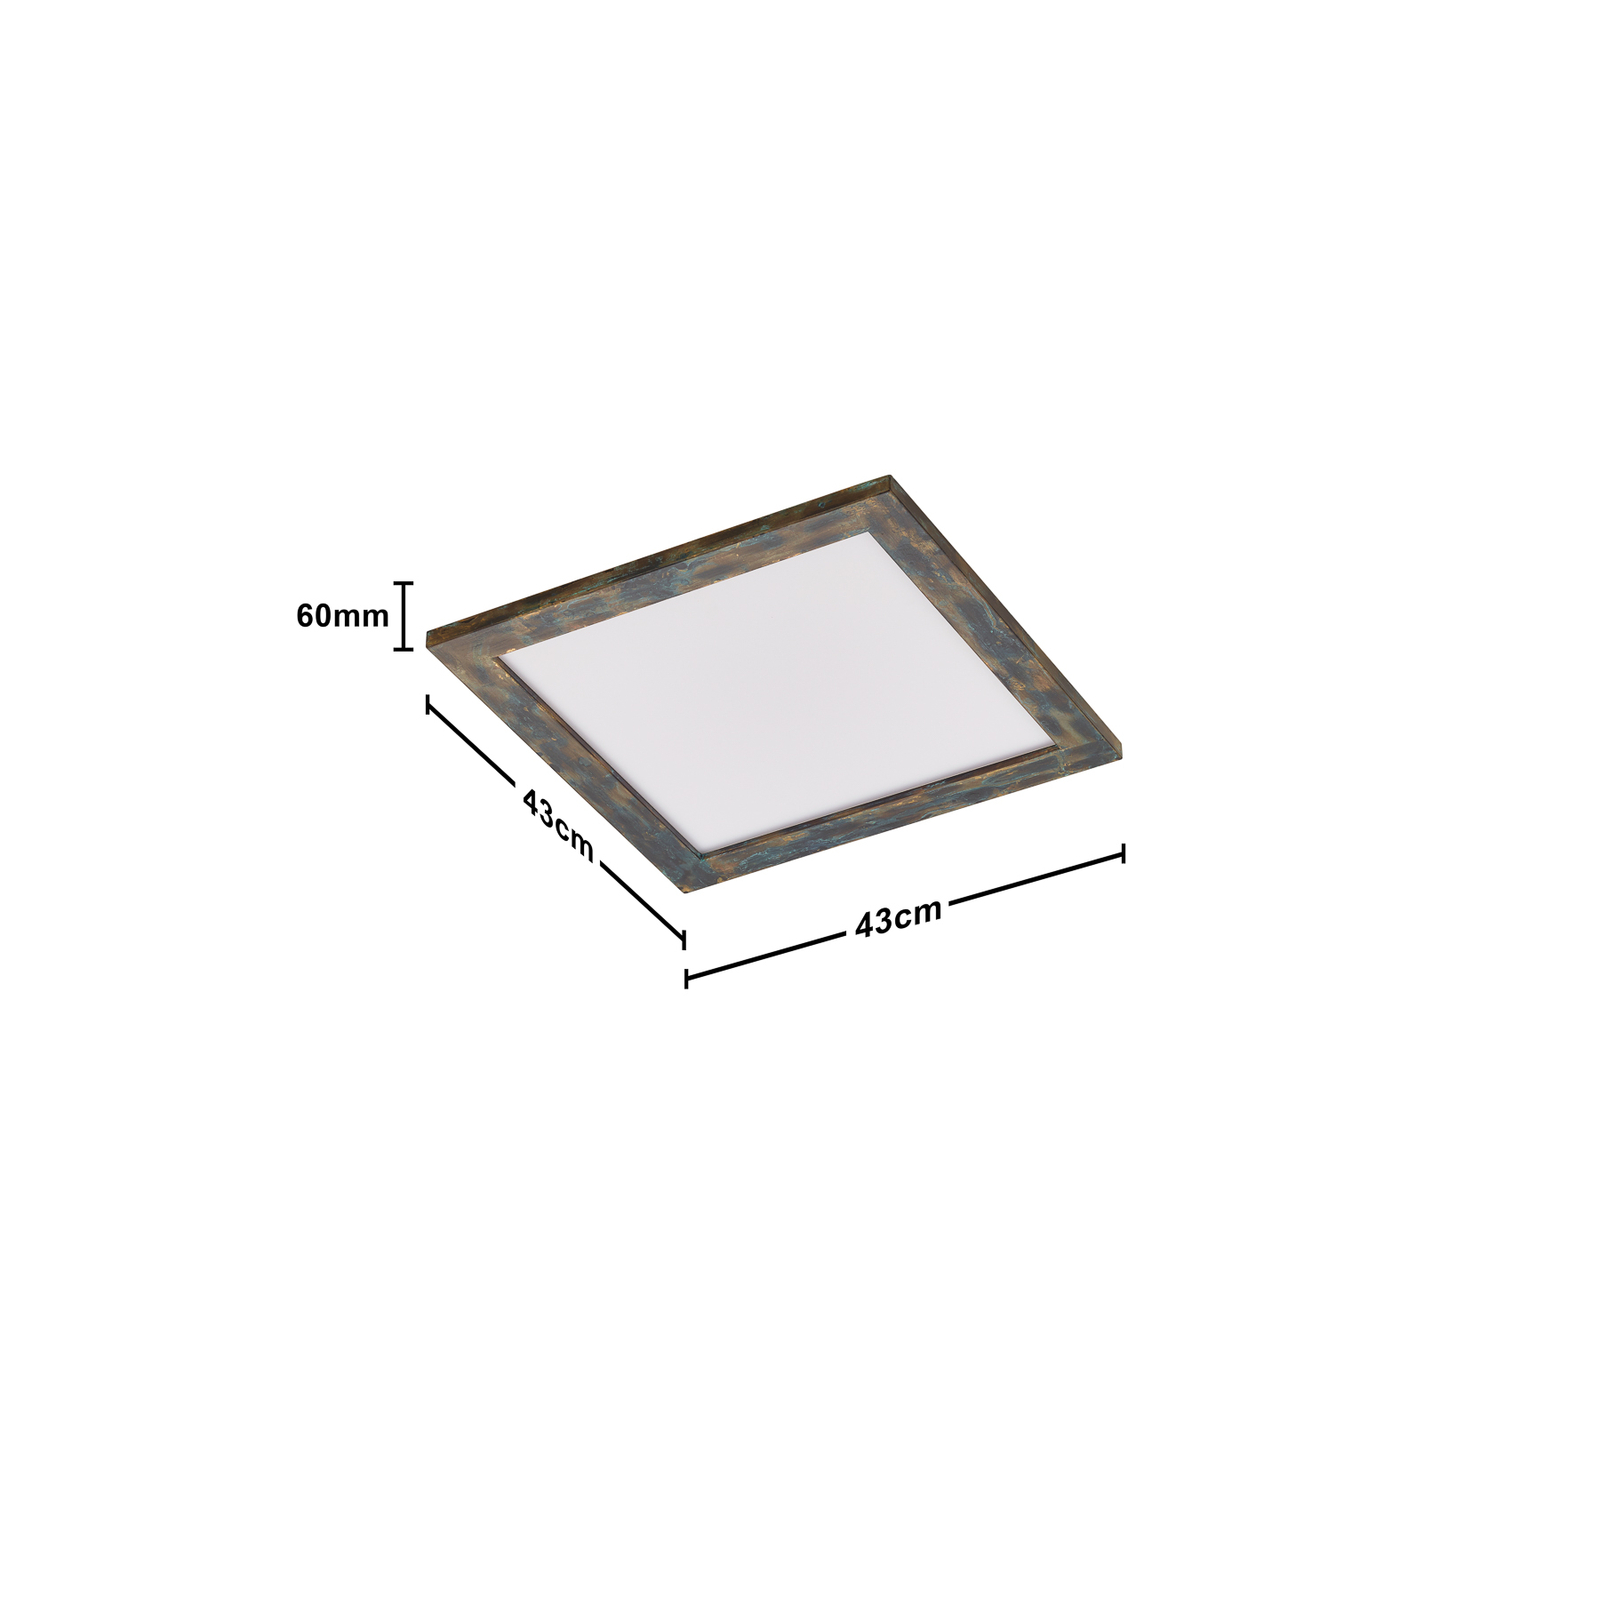 Panel LED Quitani Aurinor, pátina dorada, 45 cm